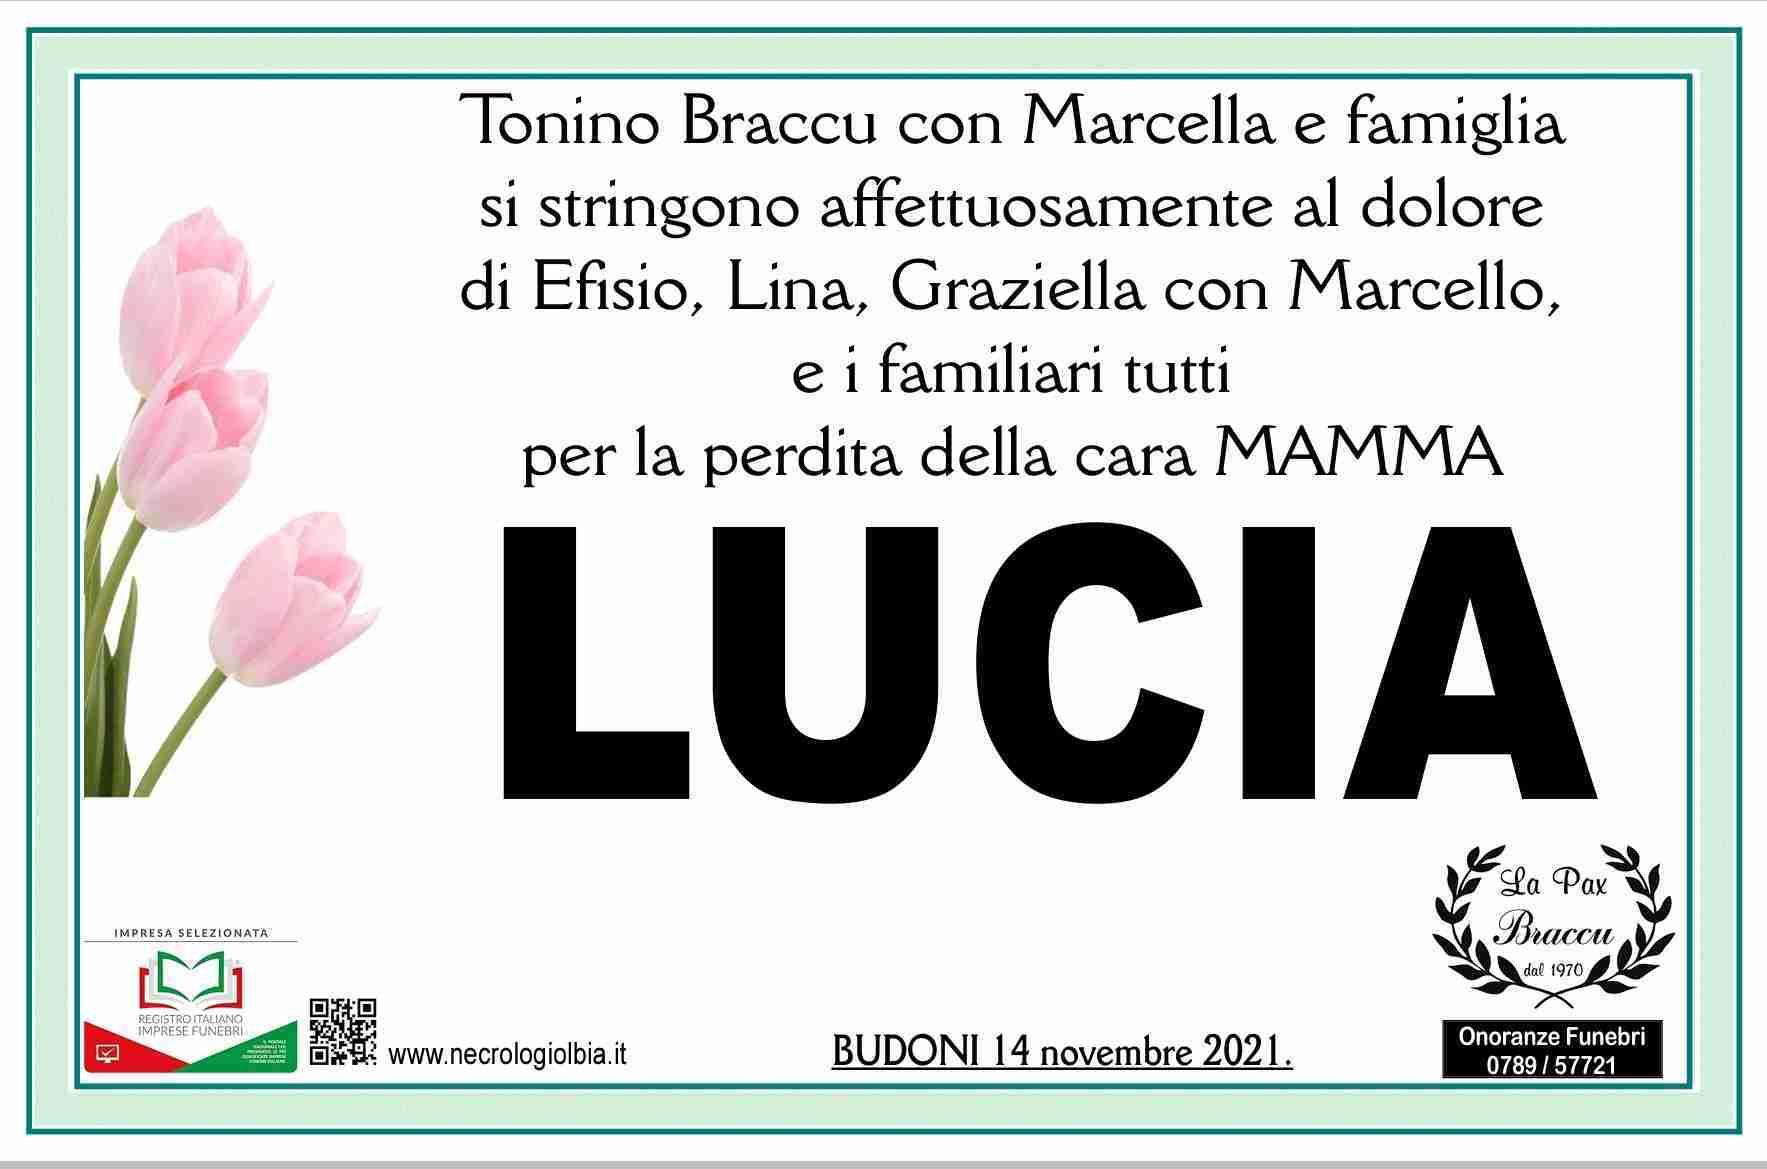 Lucia Maccioni